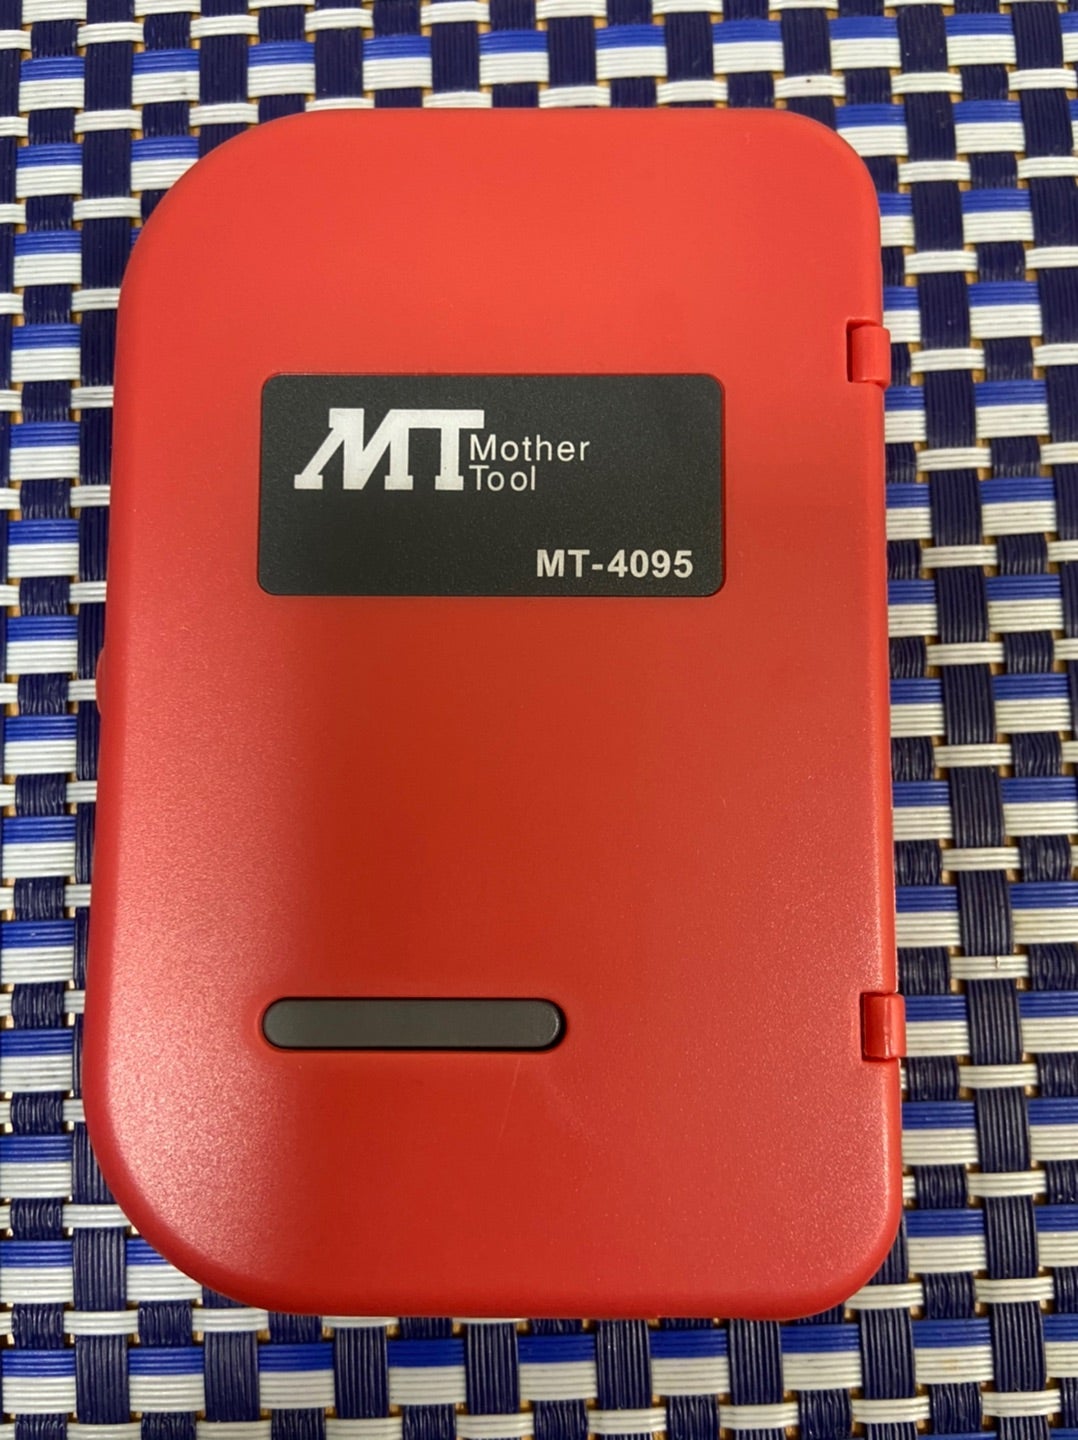 マザーツール ポケット型Dマルチメーター MT-4095